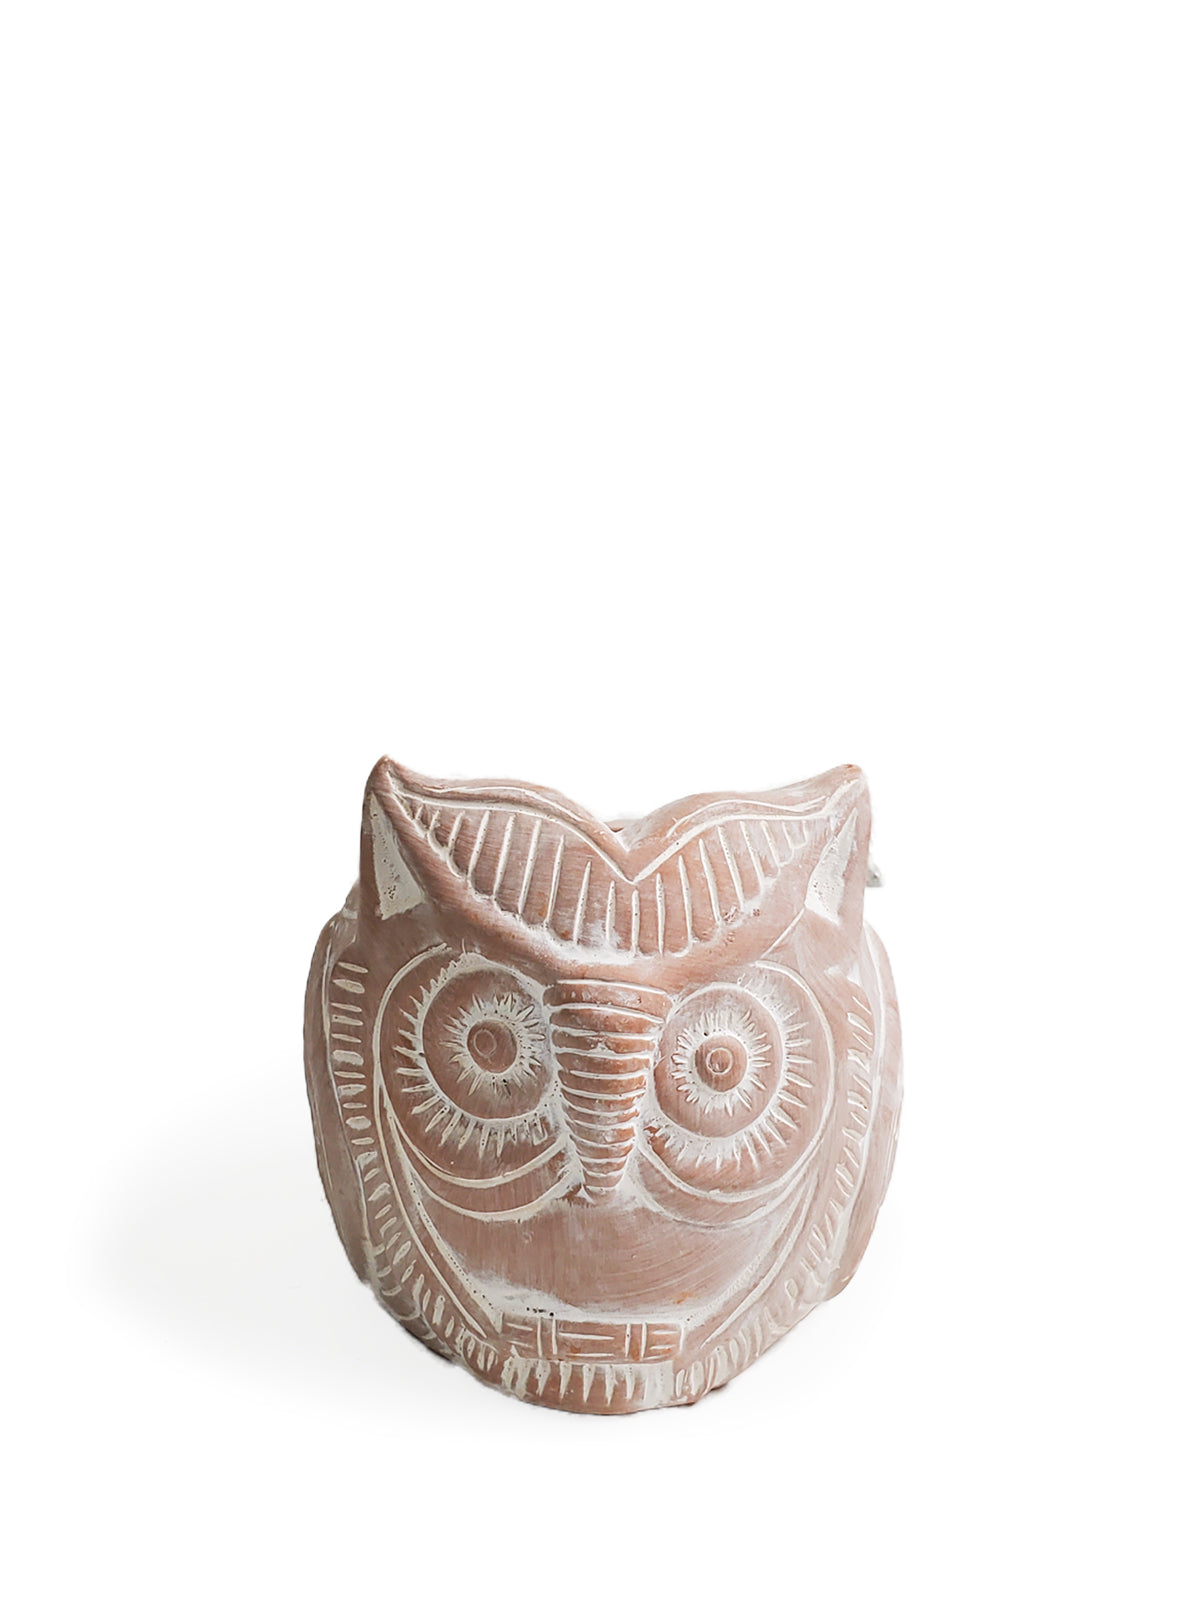 Terracotta Pot - Horned Owl-6